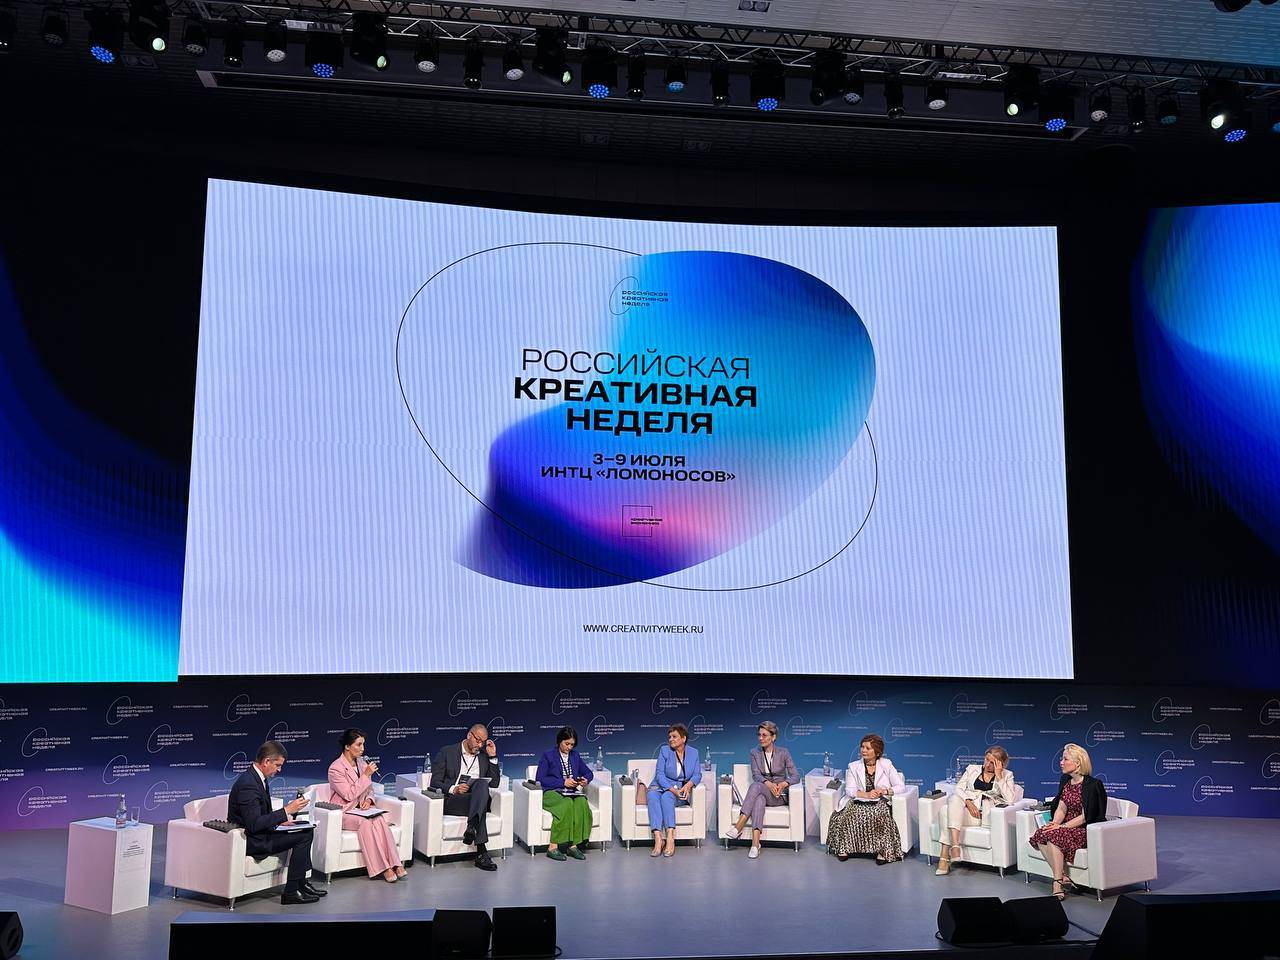 «Министерства культуры регионов - точки притяжения в регионах»: сессия Российской креативной недели